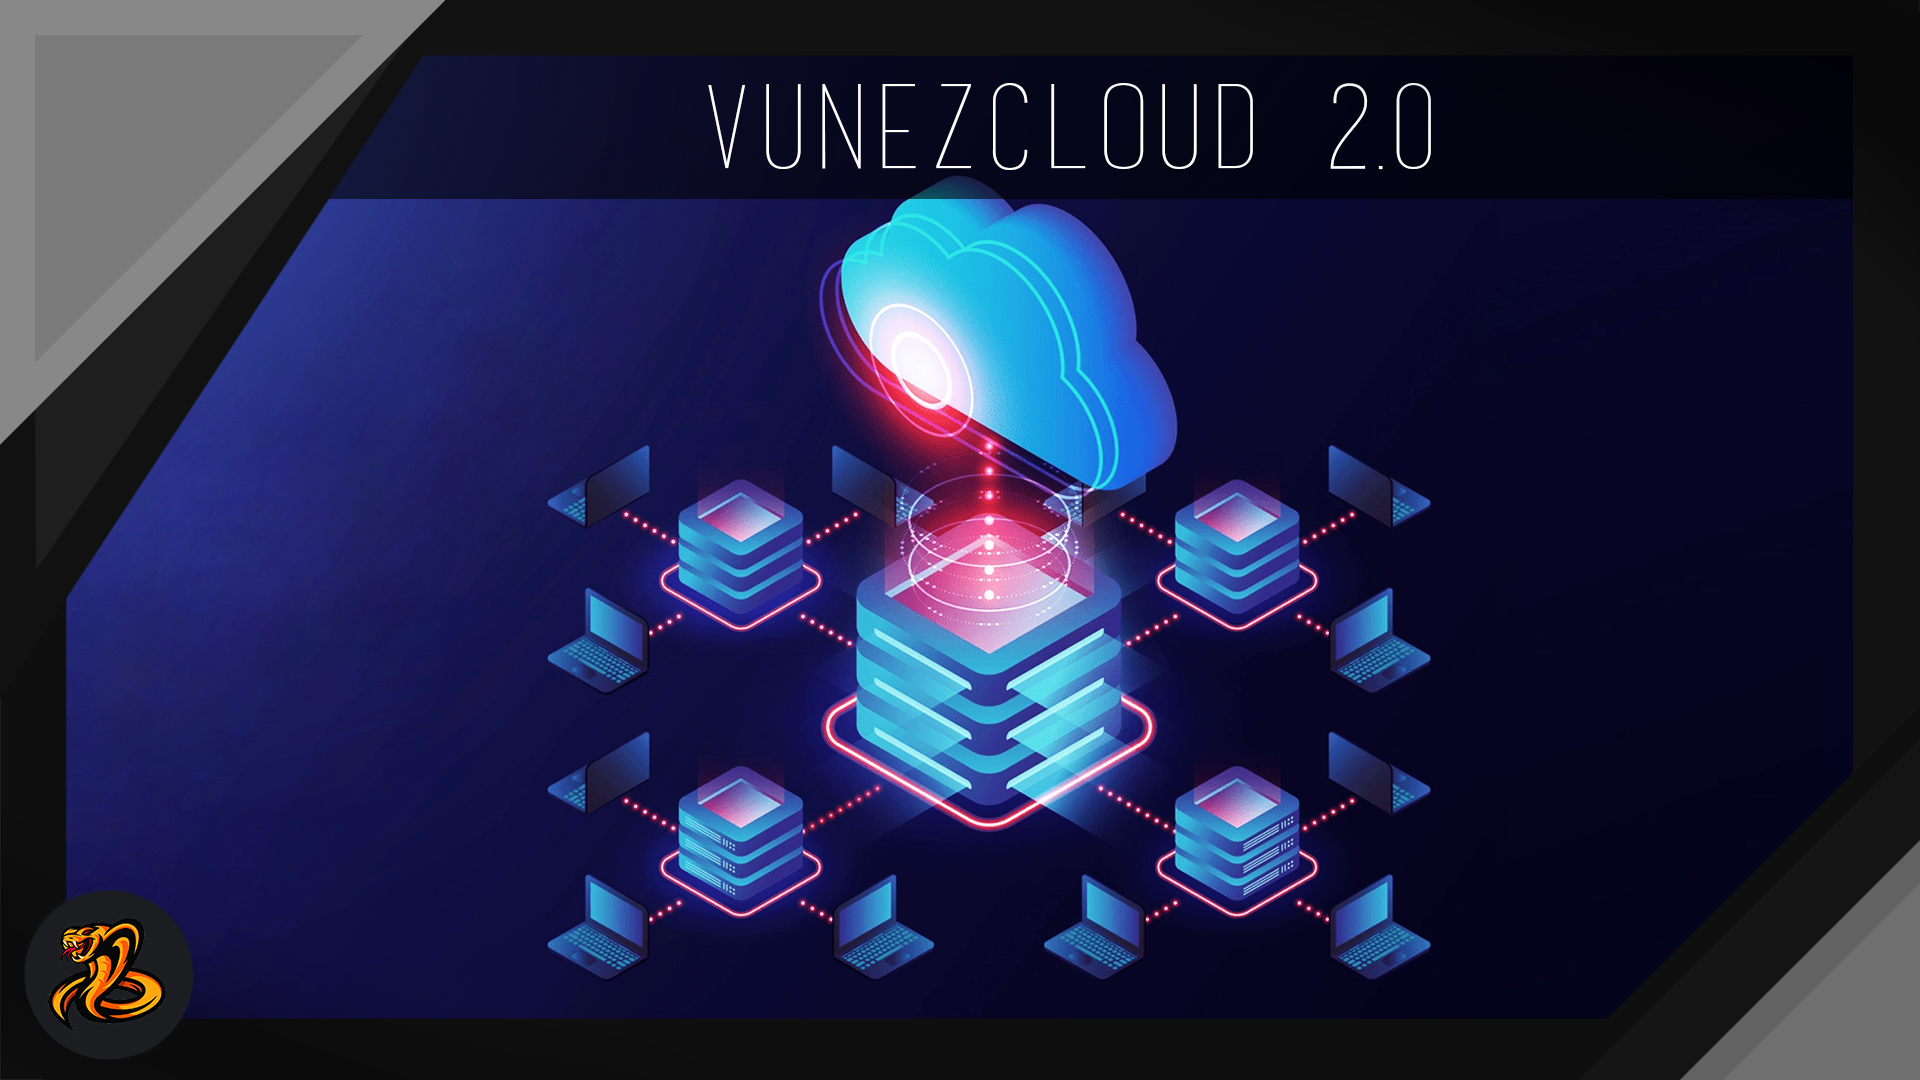 VunezDE-VunezCloud2.0.png